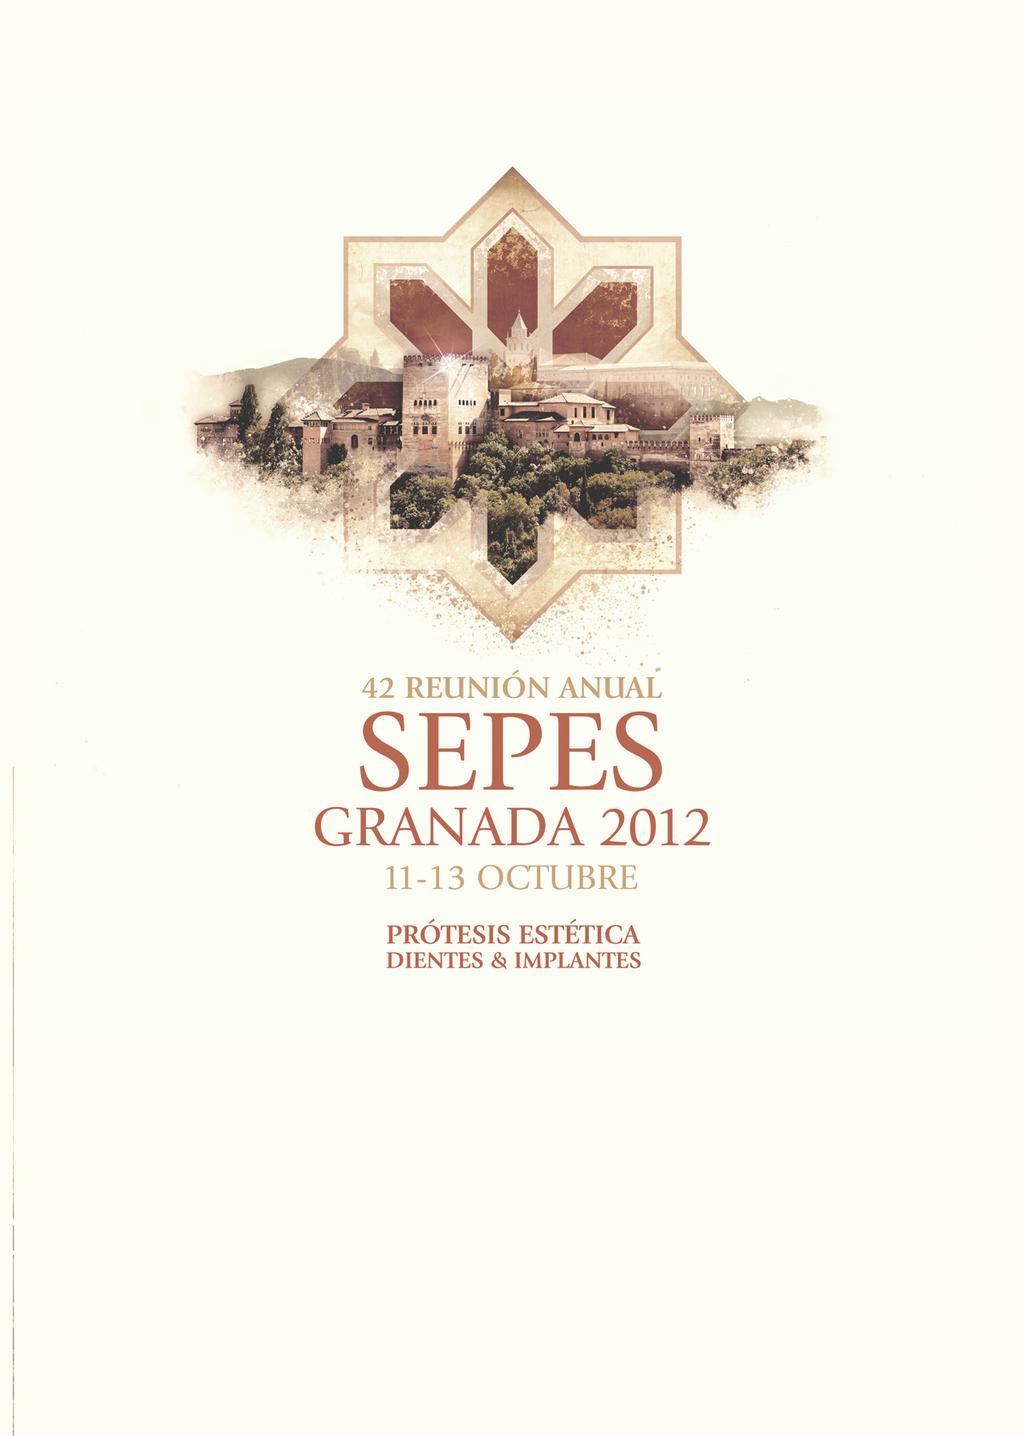 www.sepesgranada2012.